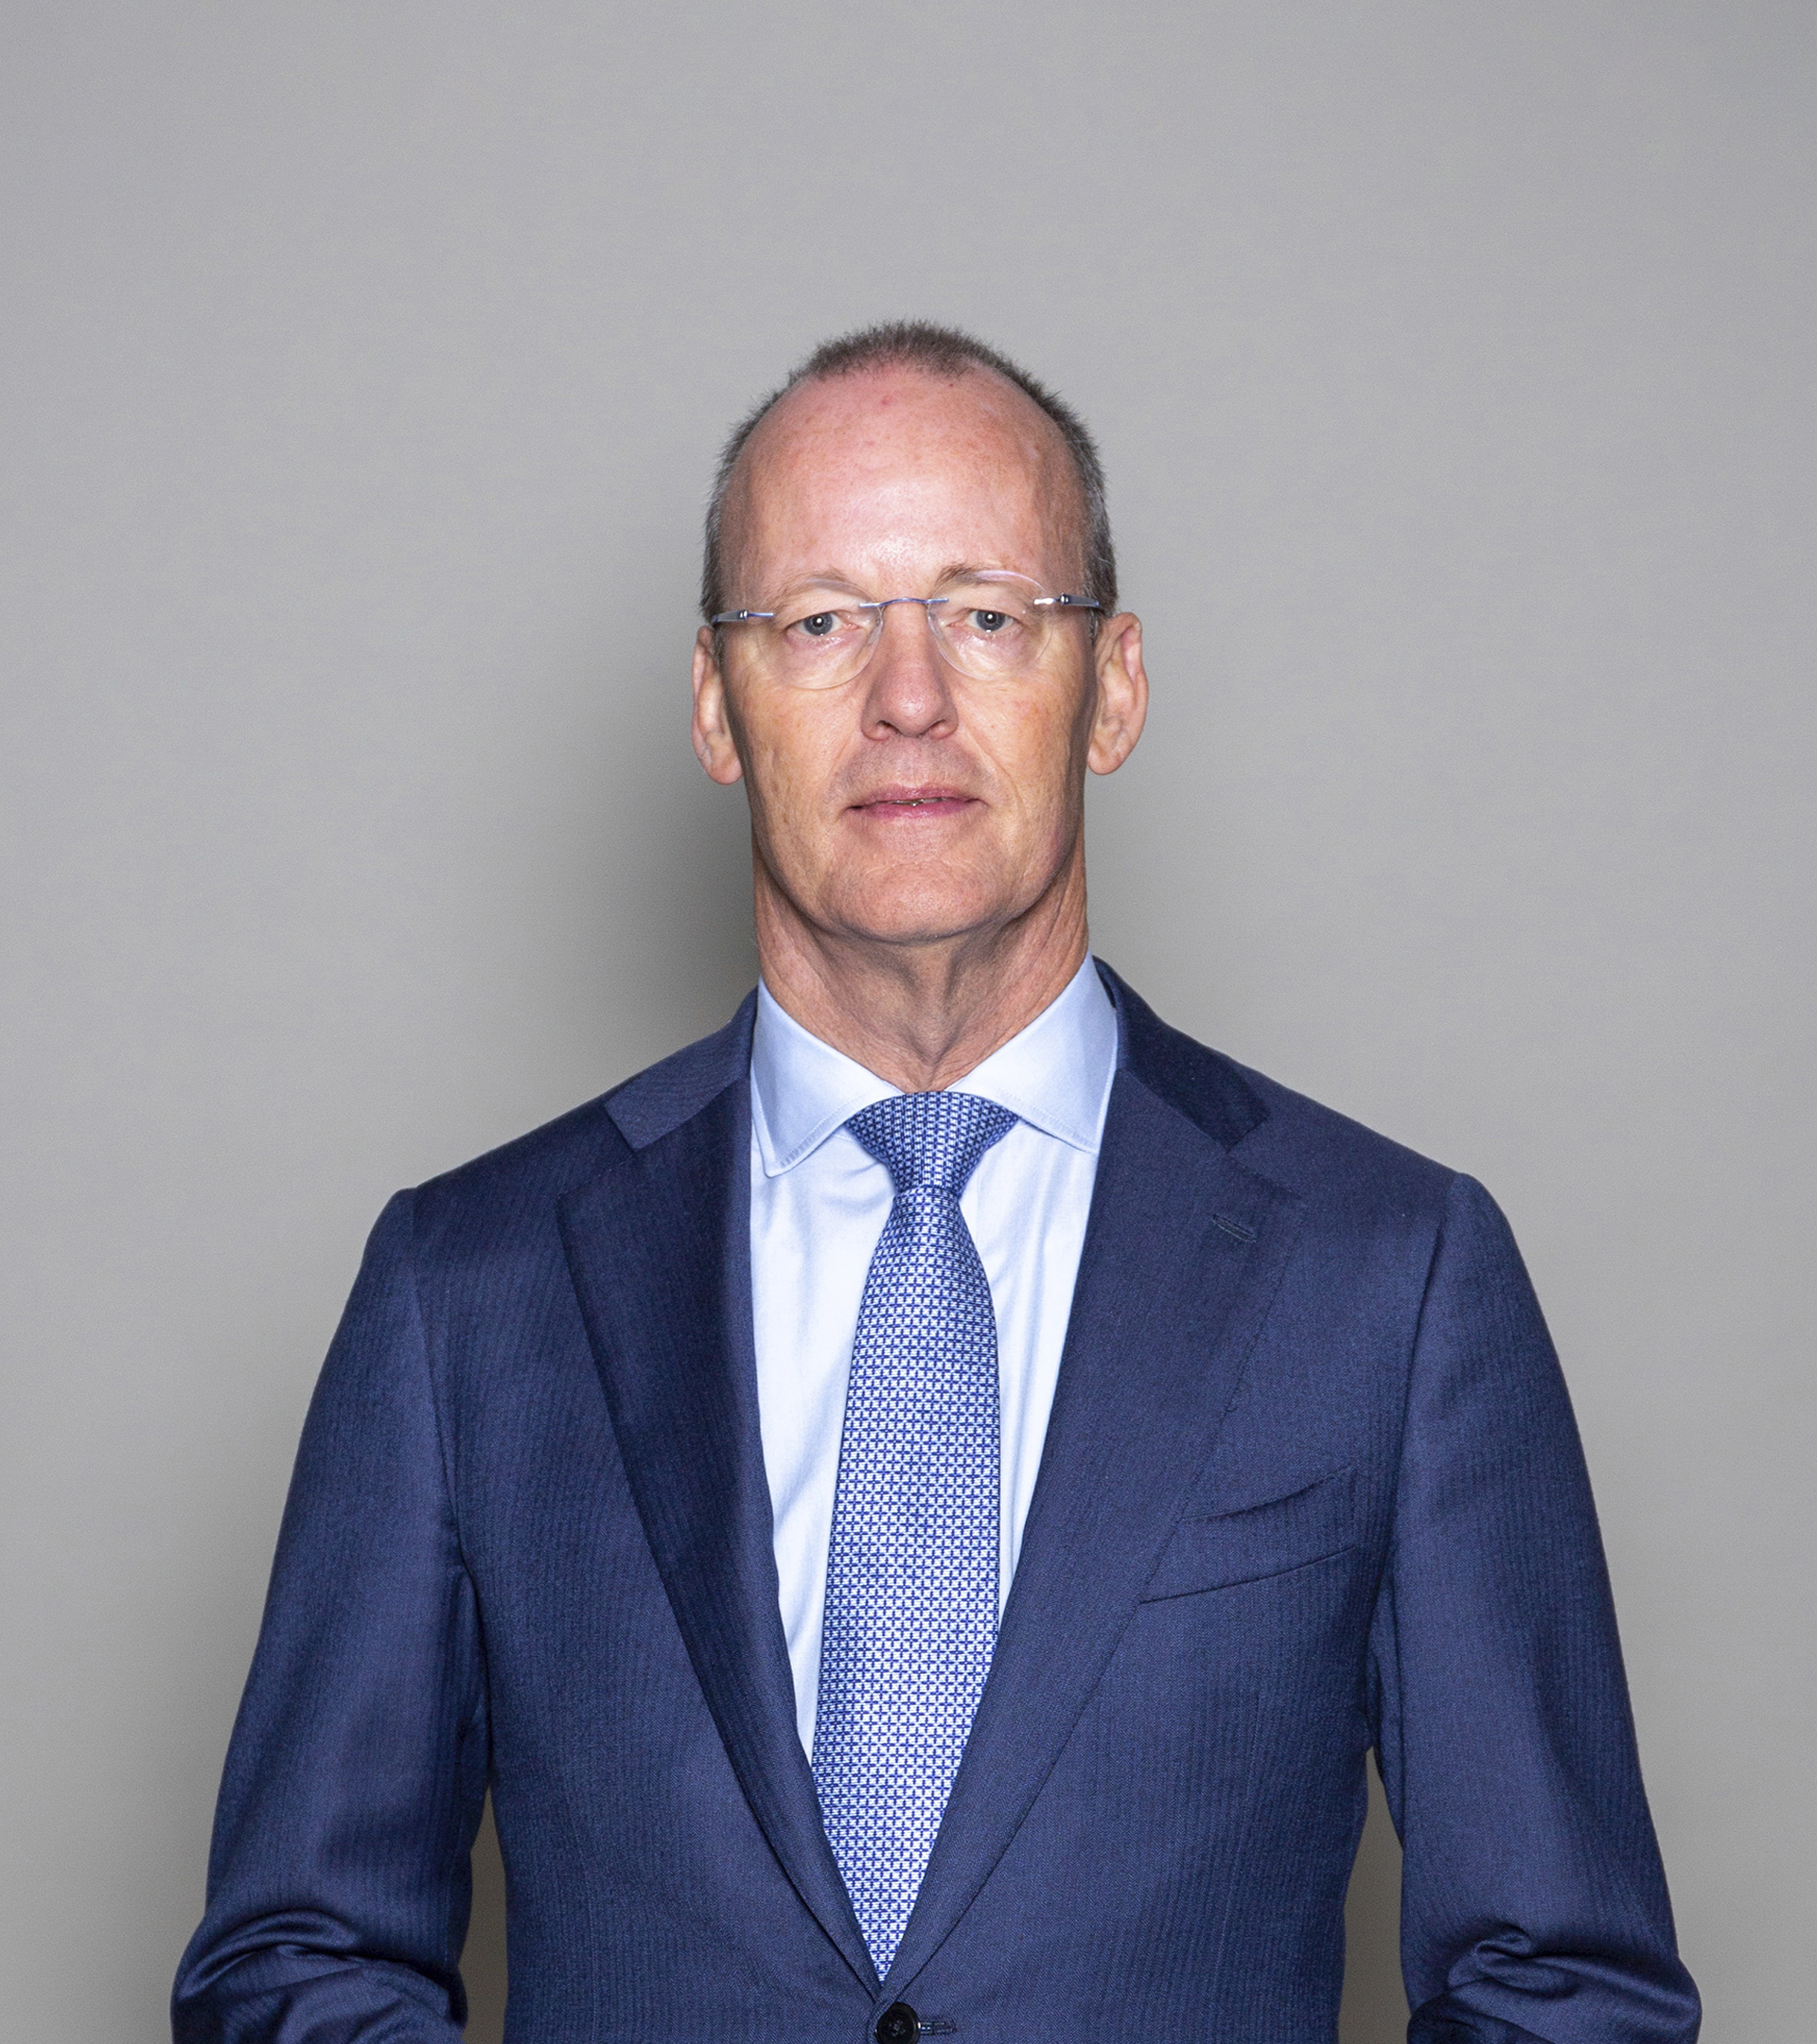 Klaas Knot; gobernador del banco central de Países Bajos y presidente del Consejo de Estabilidad Financiera.